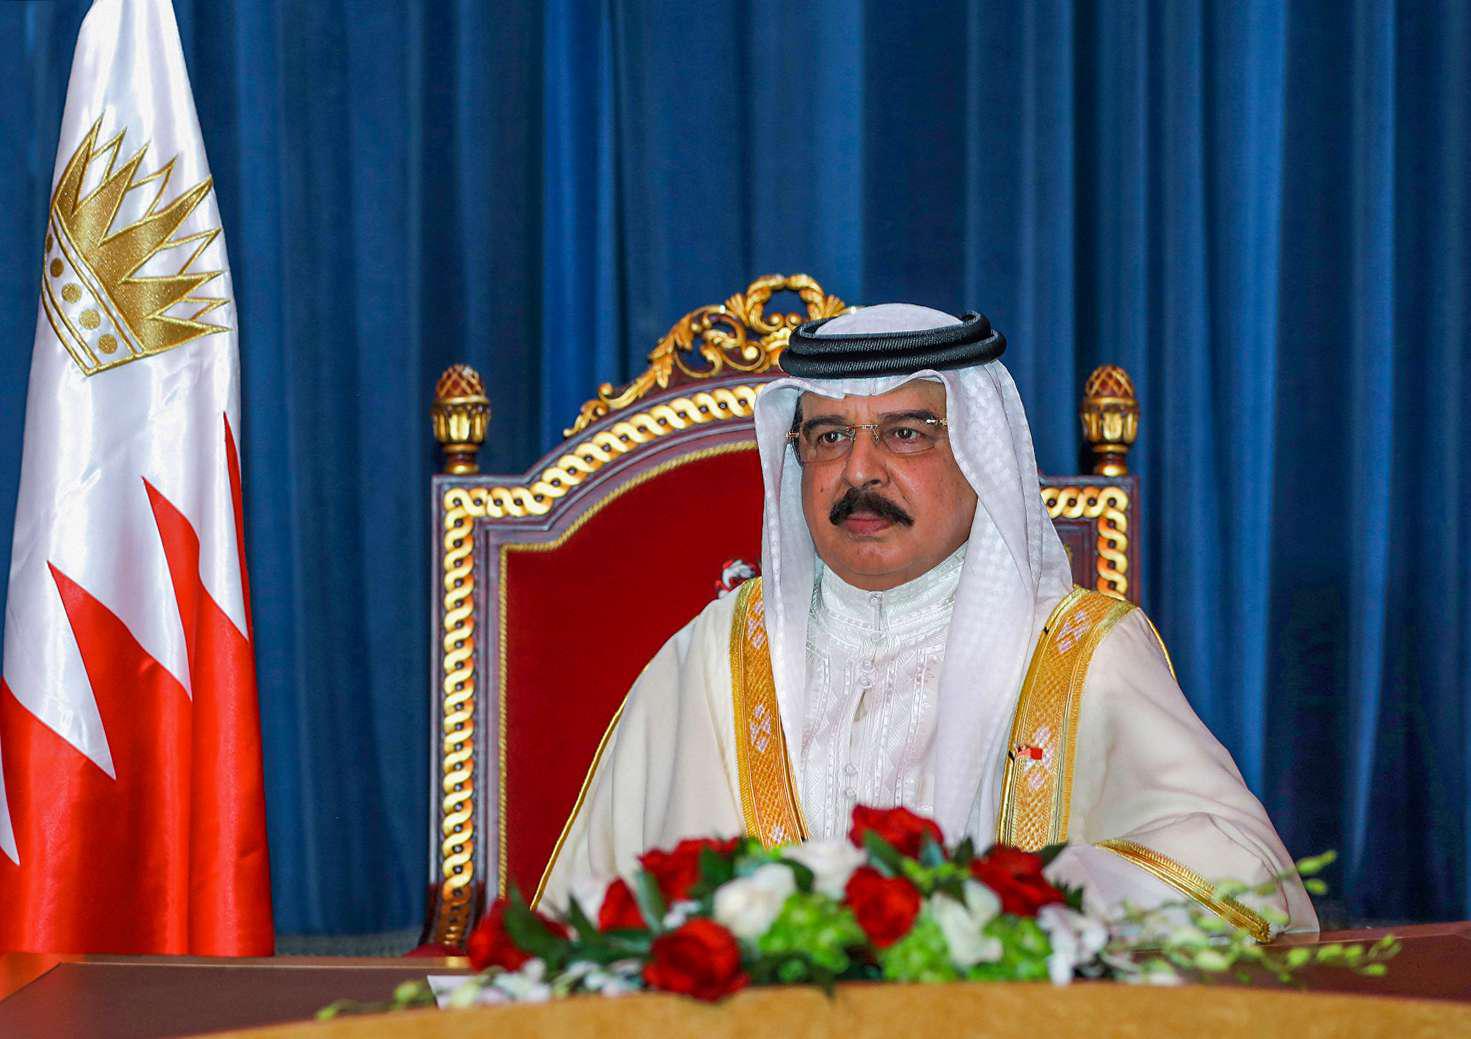 العاهل البحريني يشدد على المضي في النهج الديمقراطي